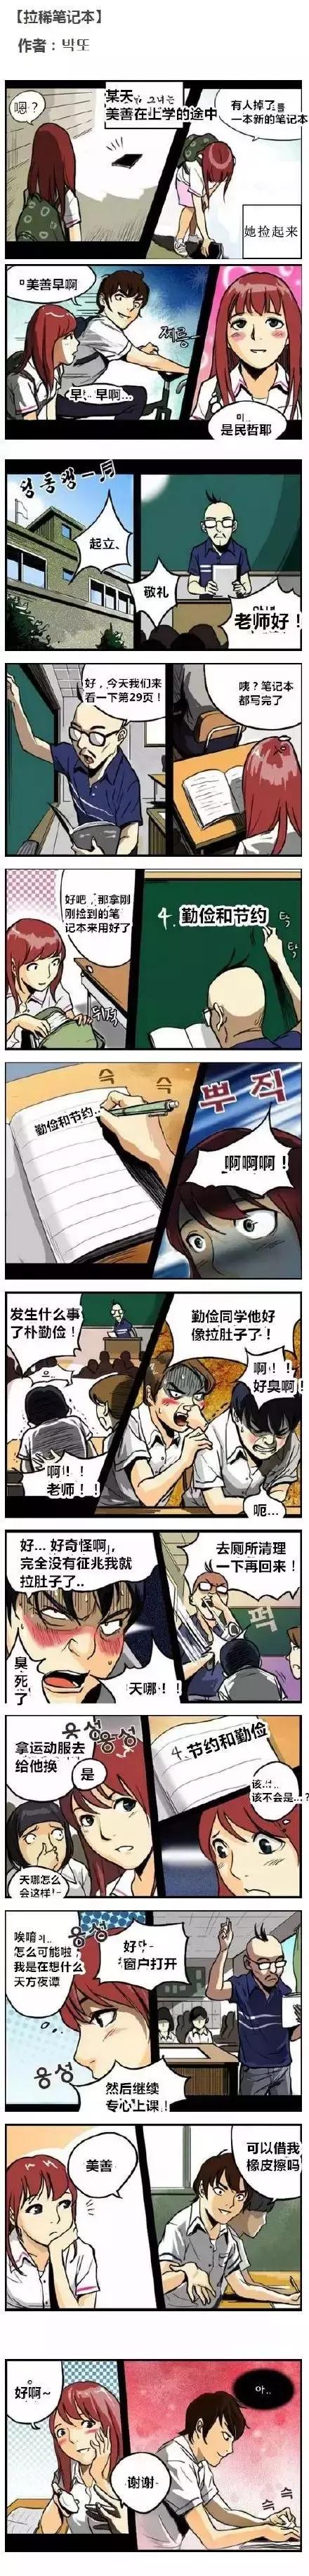 猎奇｜韩国高能漫画《拉稀笔记》，这脑洞简直了